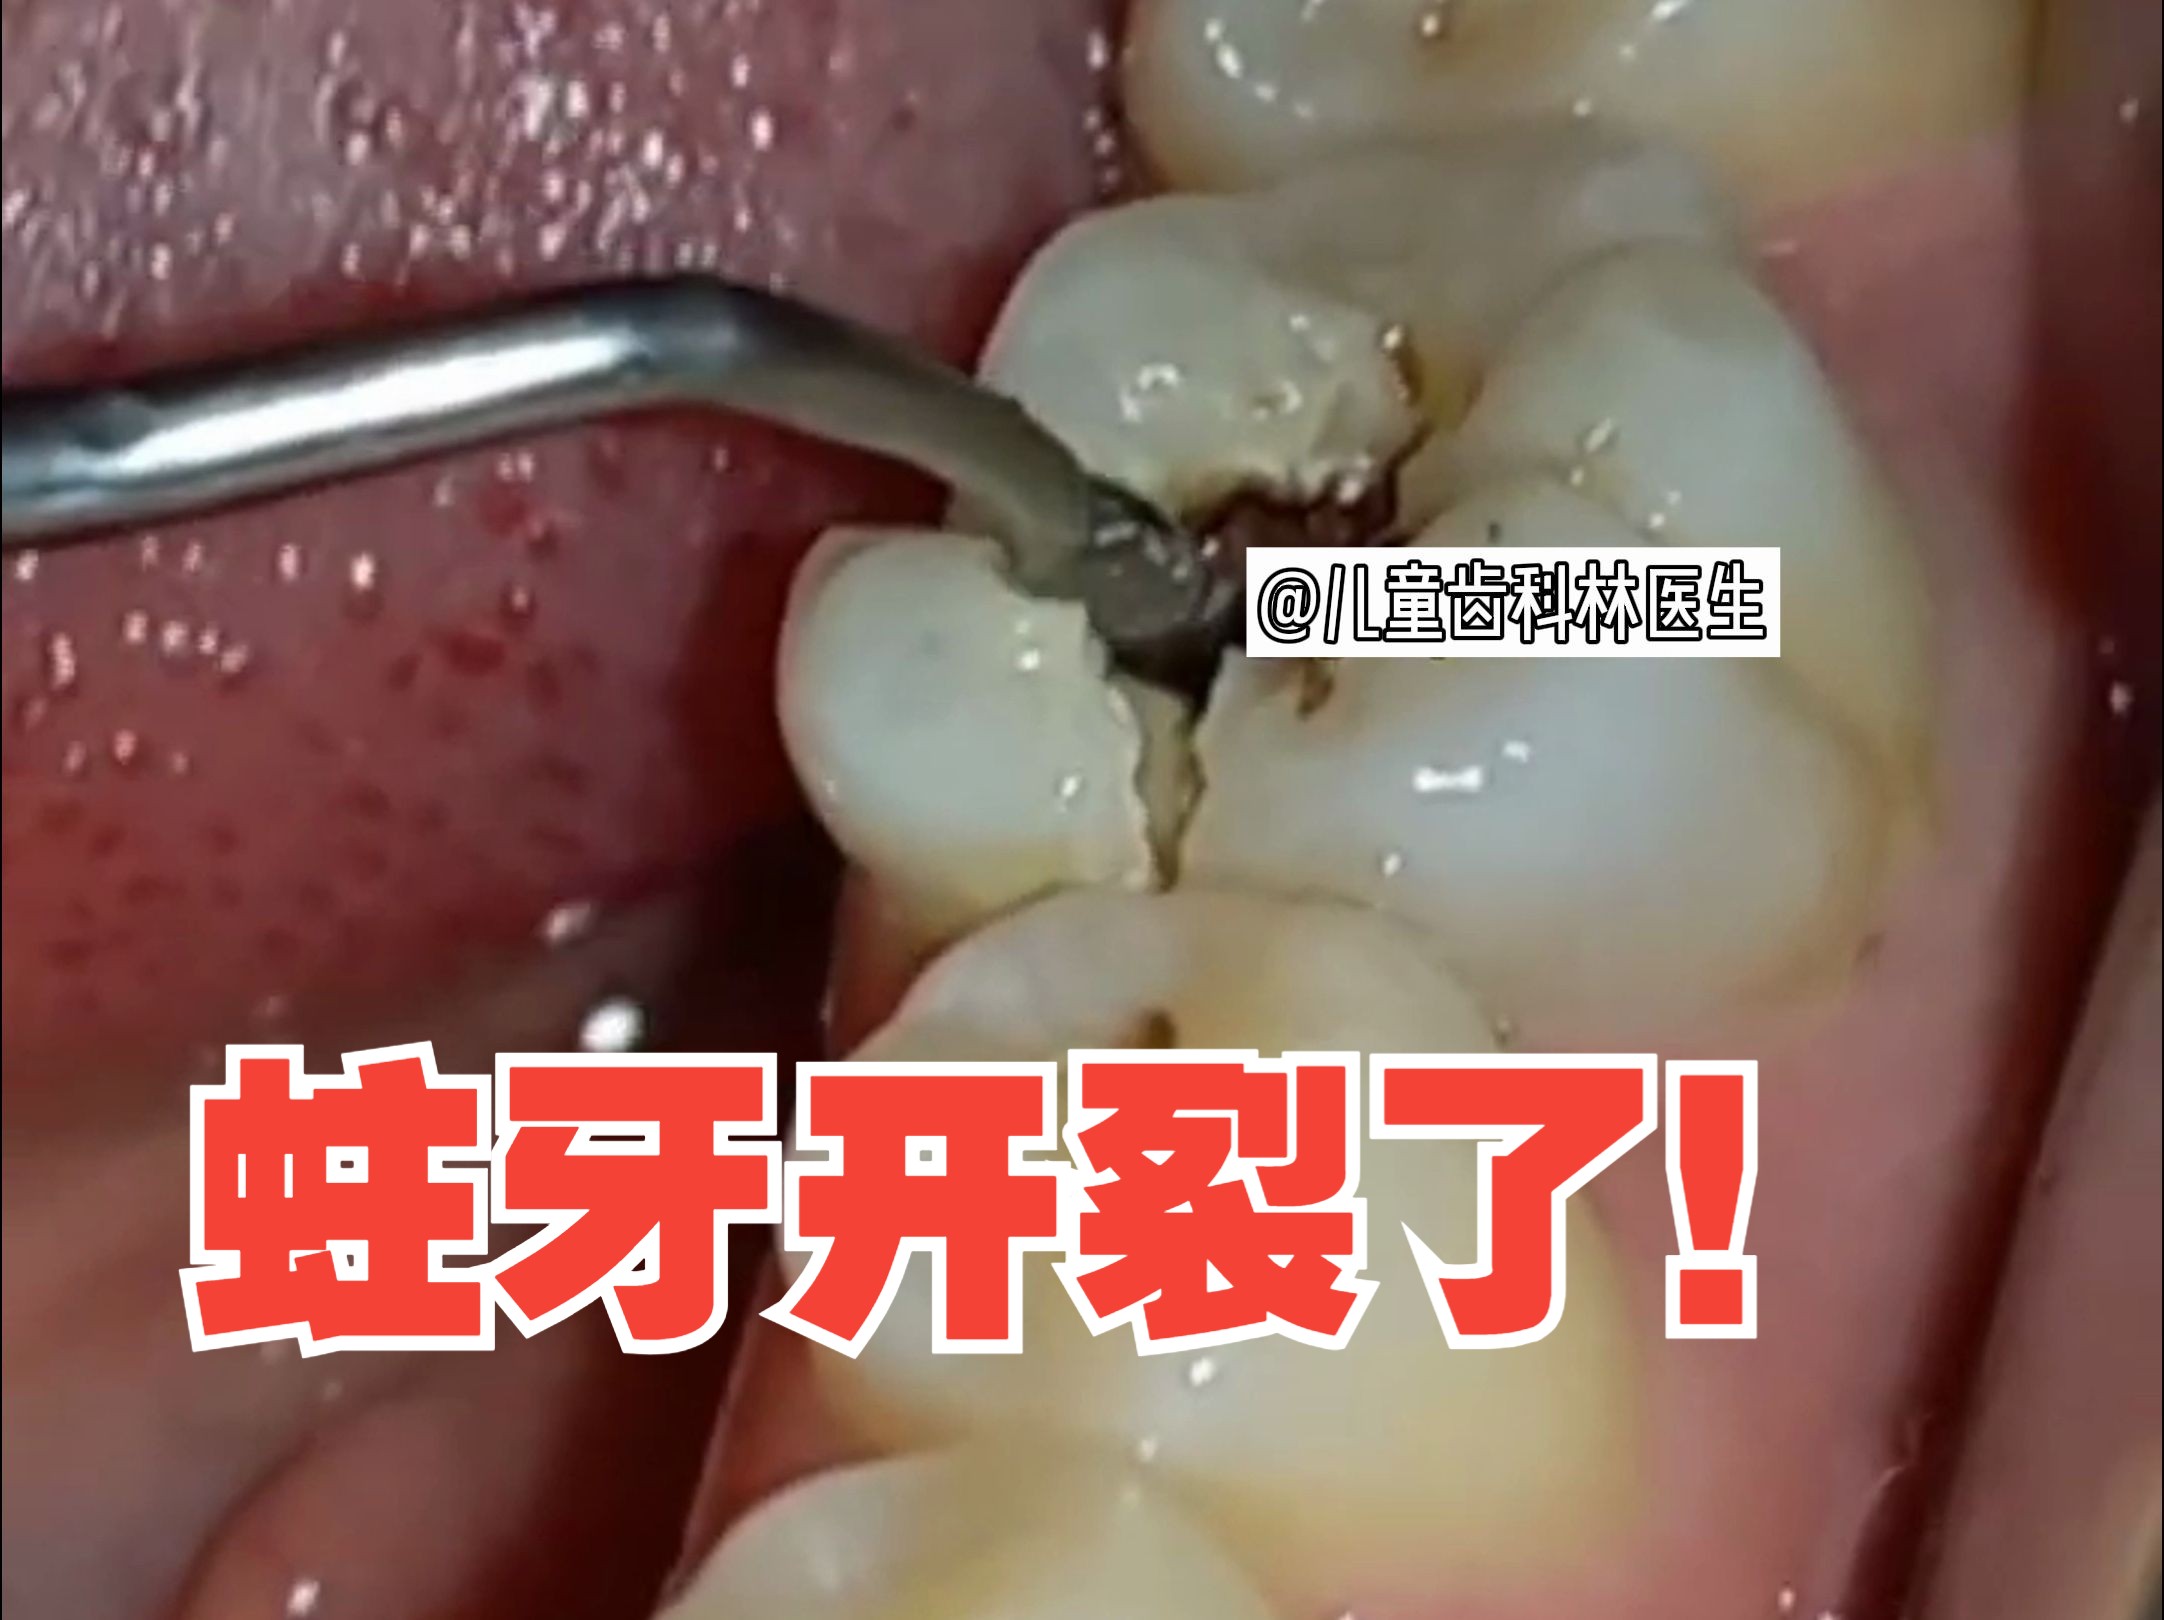 不好好爱护牙齿的后果：导致牙齿蛀得都裂开了！